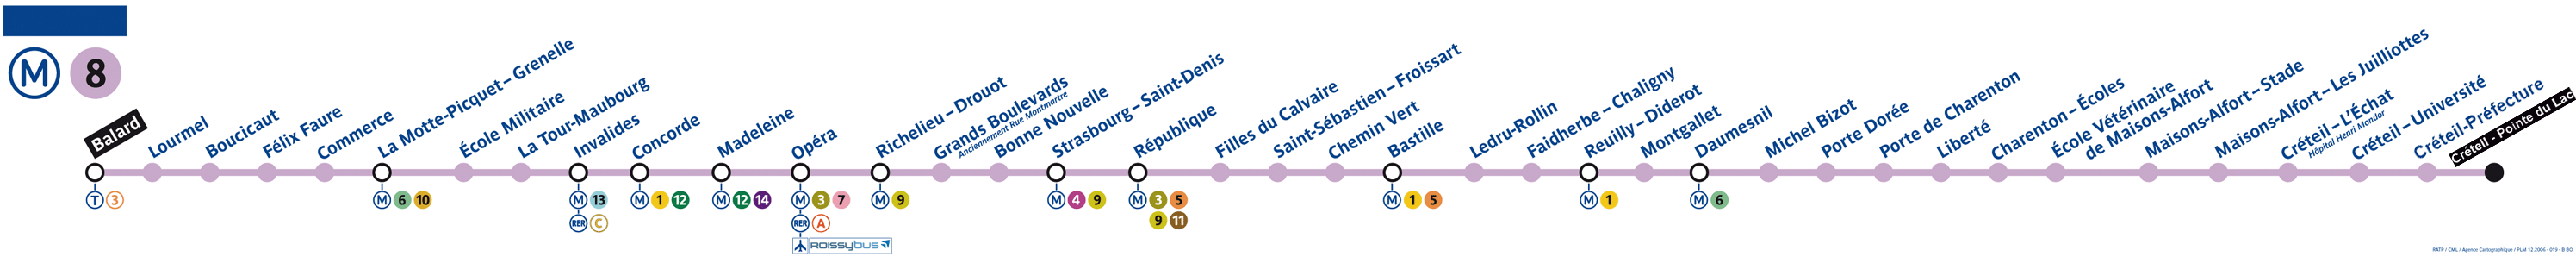 Plan Ligne 8 métro de Paris